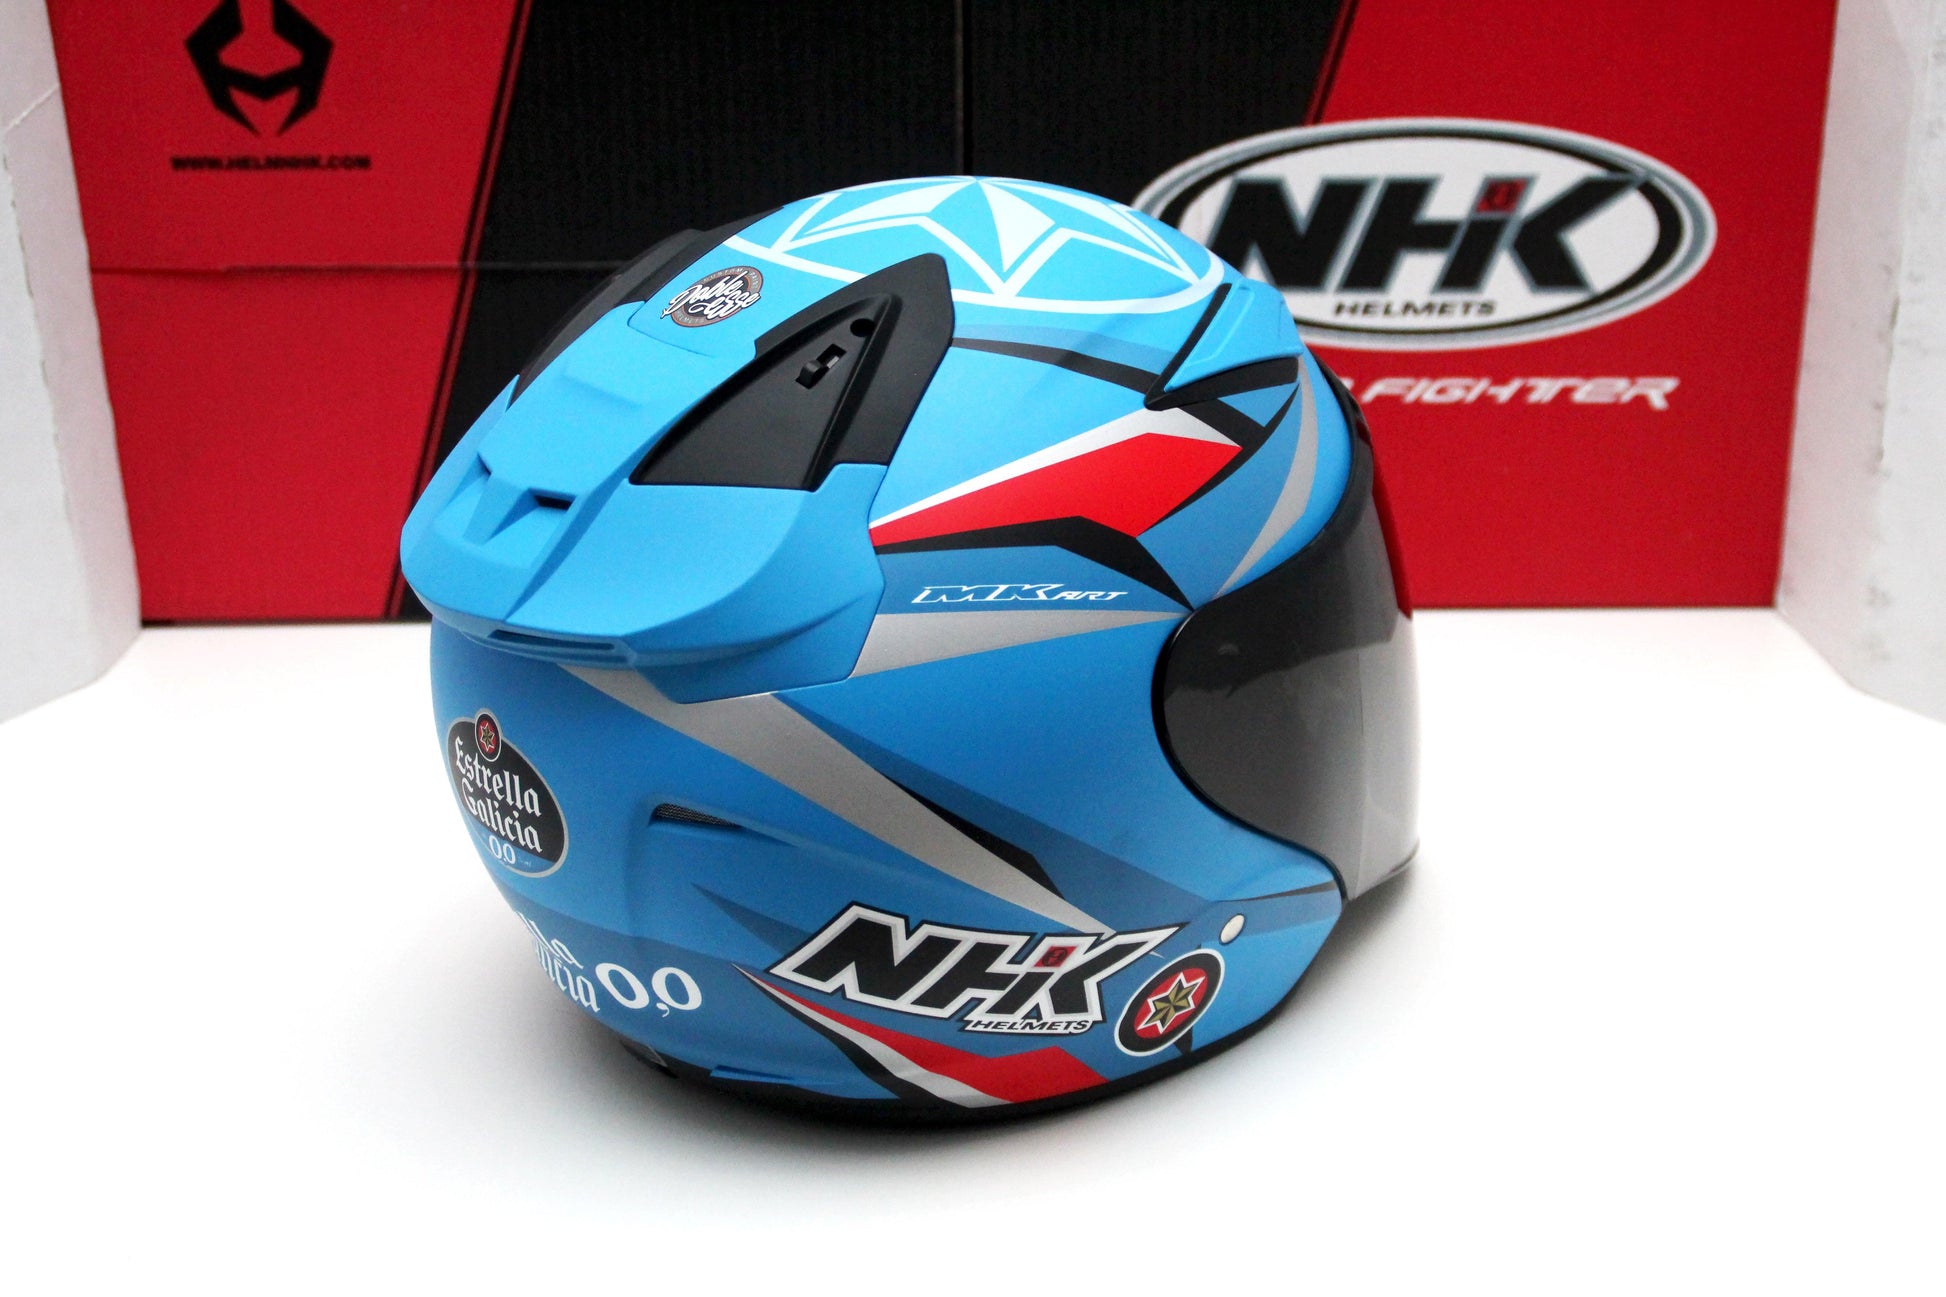 NHK R1 v2.0 Estrella Galicia (Blue Estrella Doft) - Durian Bikers